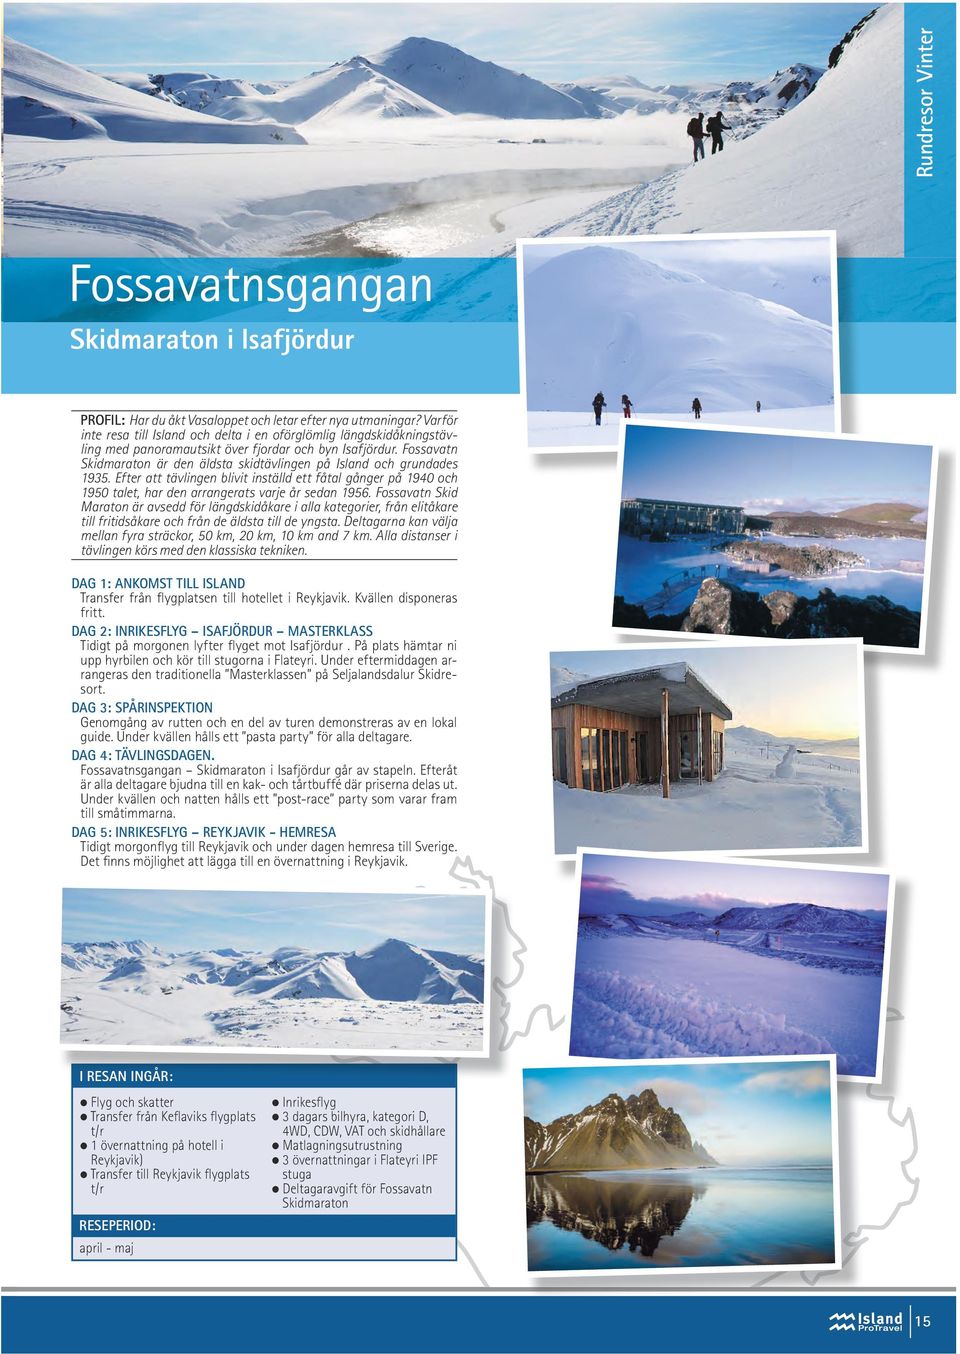 Fossavatn Skidmaraton är den äldsta skidtävlingen på Island och grundades 1935. Efter att tävlingen blivit inställd ett fåtal gånger på 1940 och 1950 talet, har den arrangerats varje år sedan 1956.